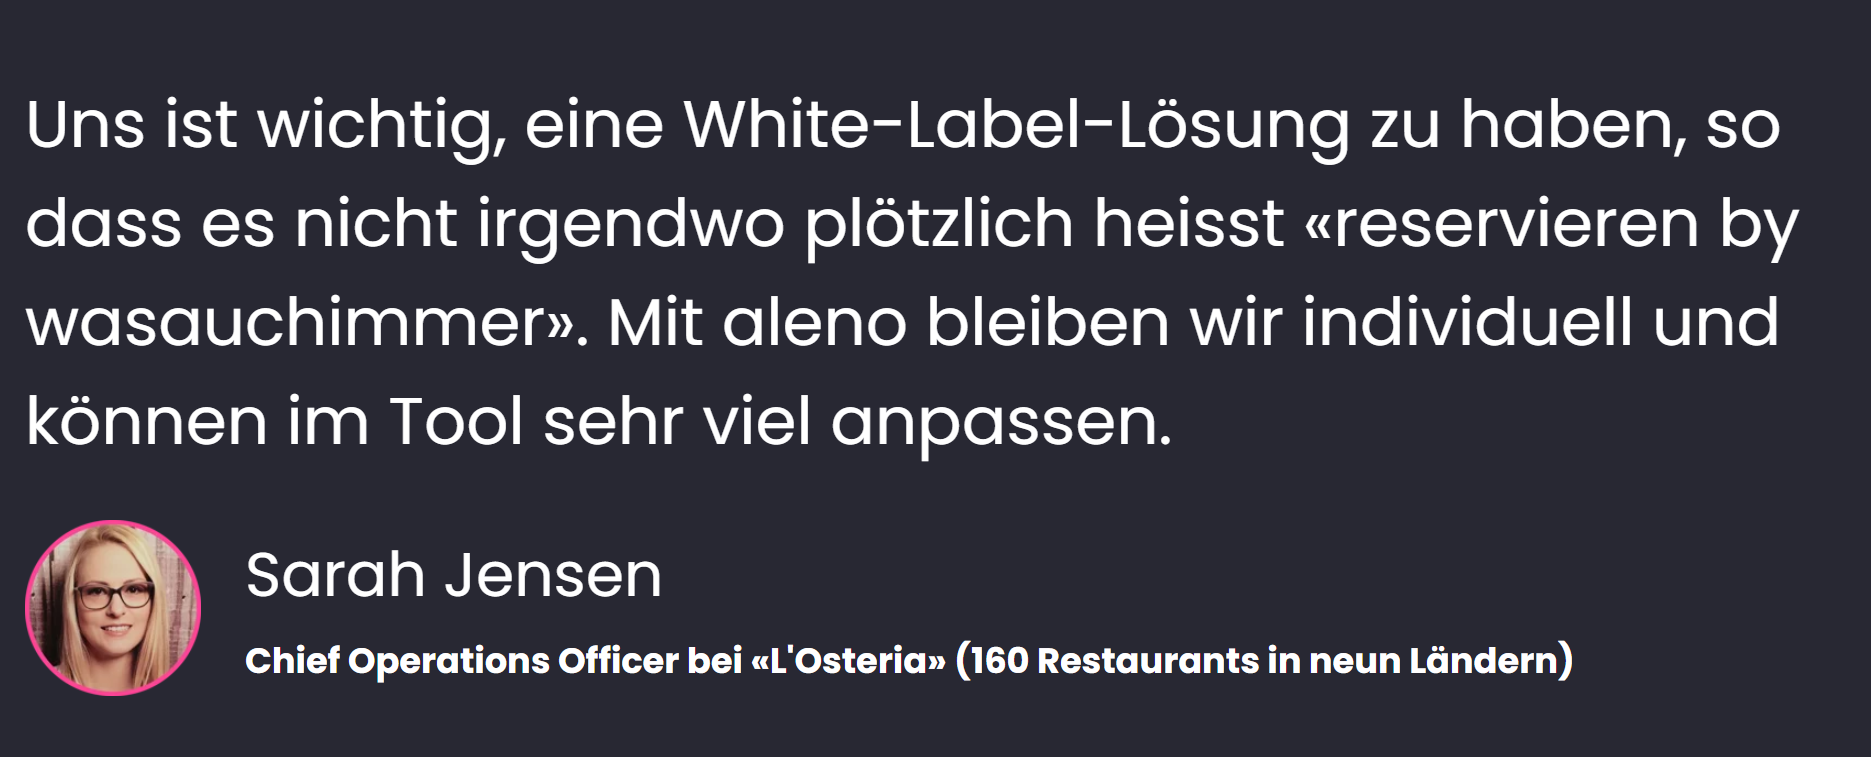 «Uns ist wichtig, eine White-Label-Lösung zu haben, so dass es nicht irgendwo plötzlich heisst «reservieren by wasauchimmer». Mit aleno bleiben wir individuell und können im Tool sehr viel anpassen», sagt Sarah Jensen, Chief Operations Officer bei L'Osteria (160 Restaurants in 9 Ländern).